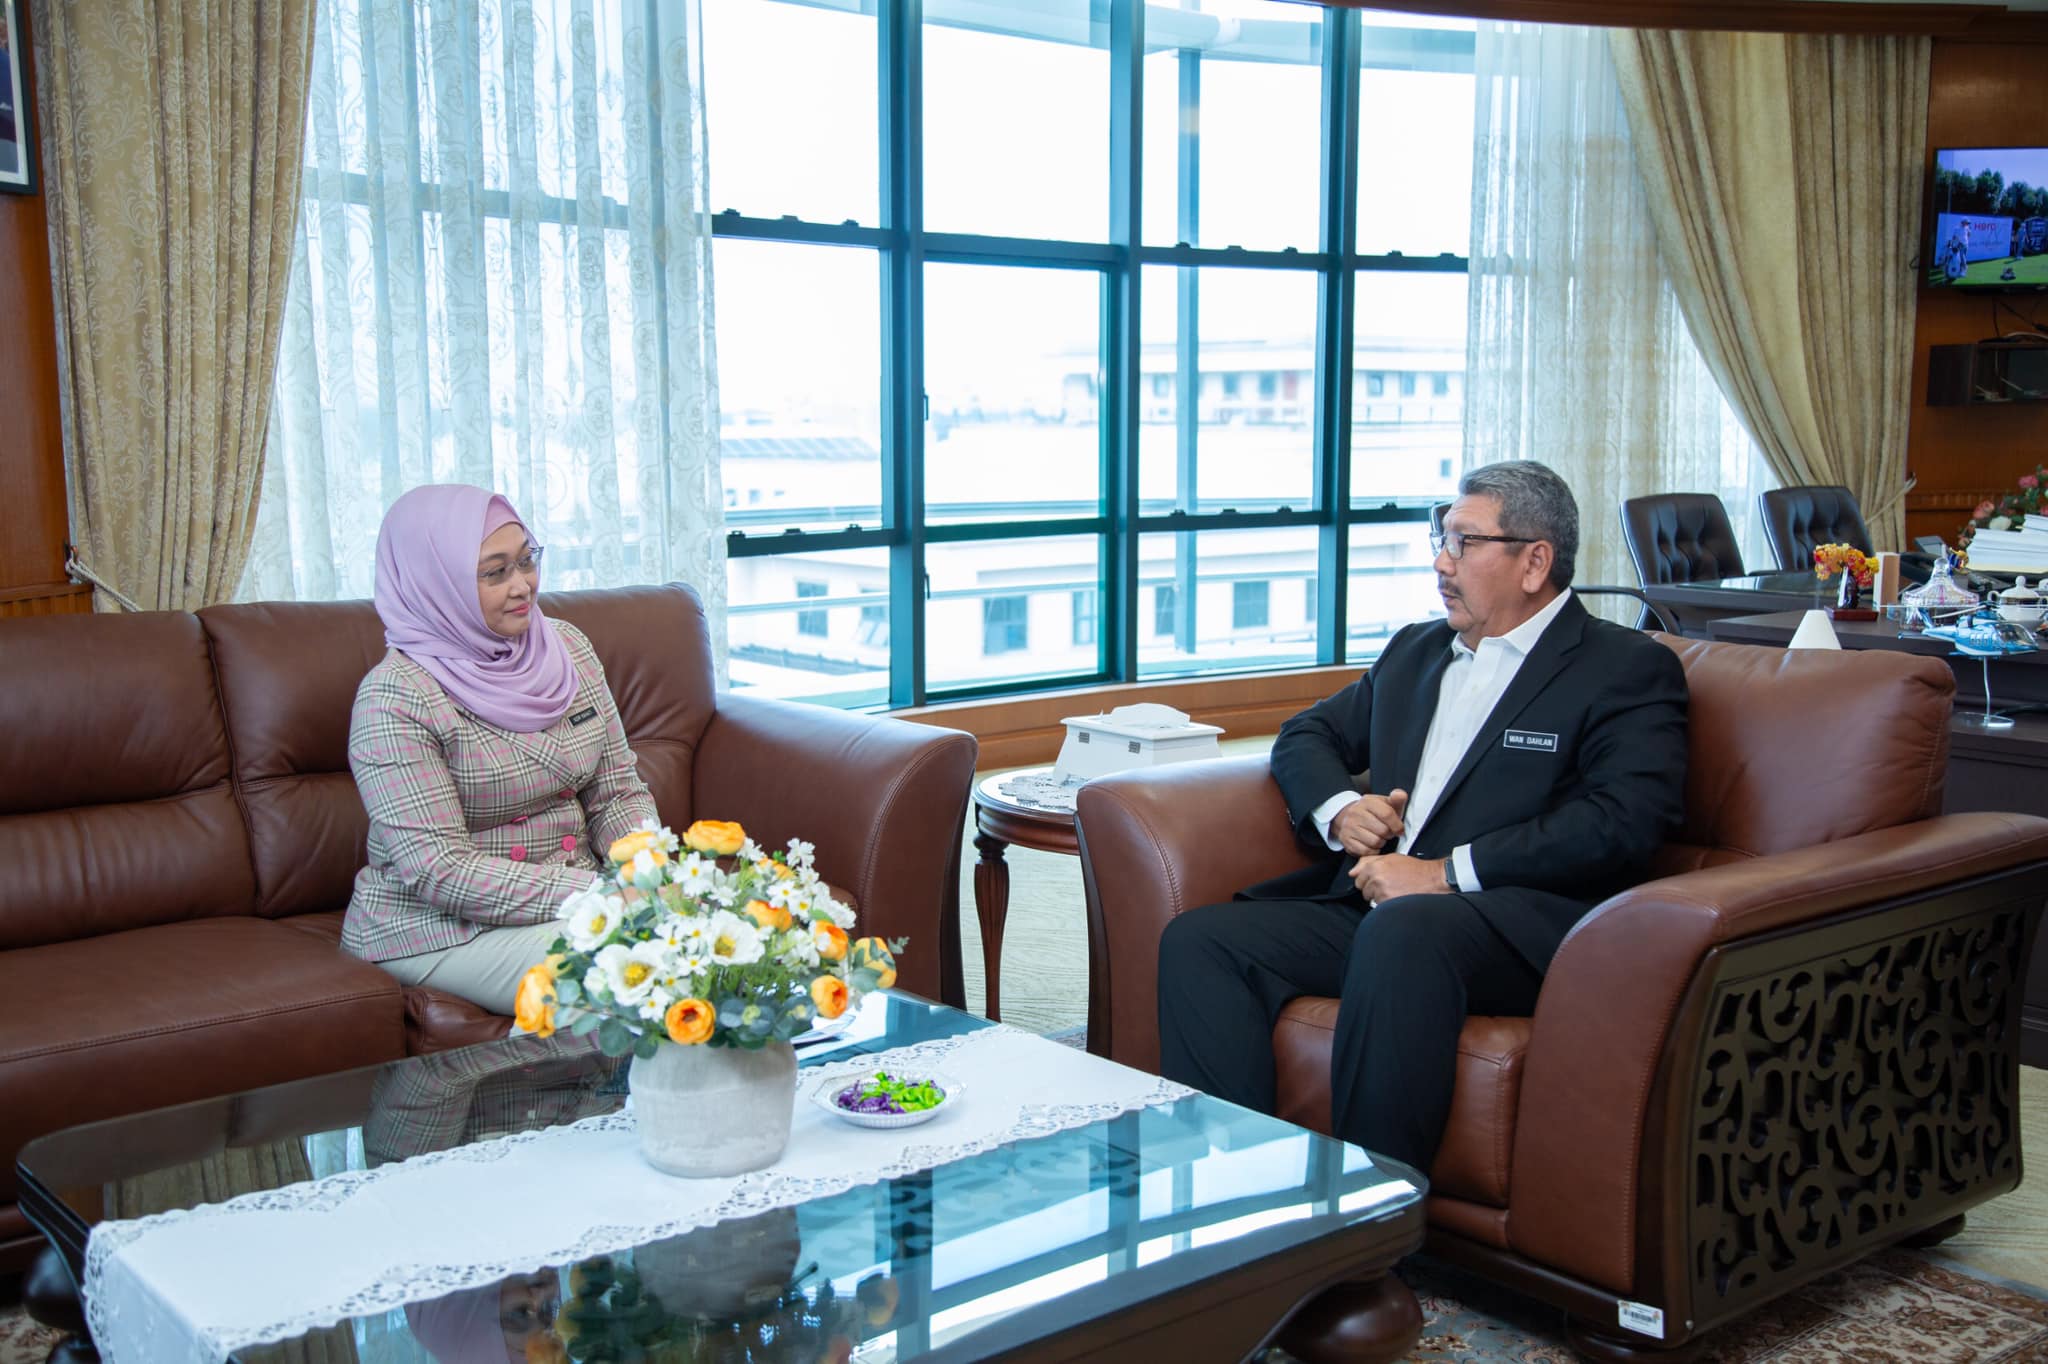 Kunjungan hormat ke atas YBhg. Dato’ Sri Wan Ahmad Dahlan bin Haji Abdul Aziz, Ketua Pengarah Perkhidmatan Awam (KPPA)